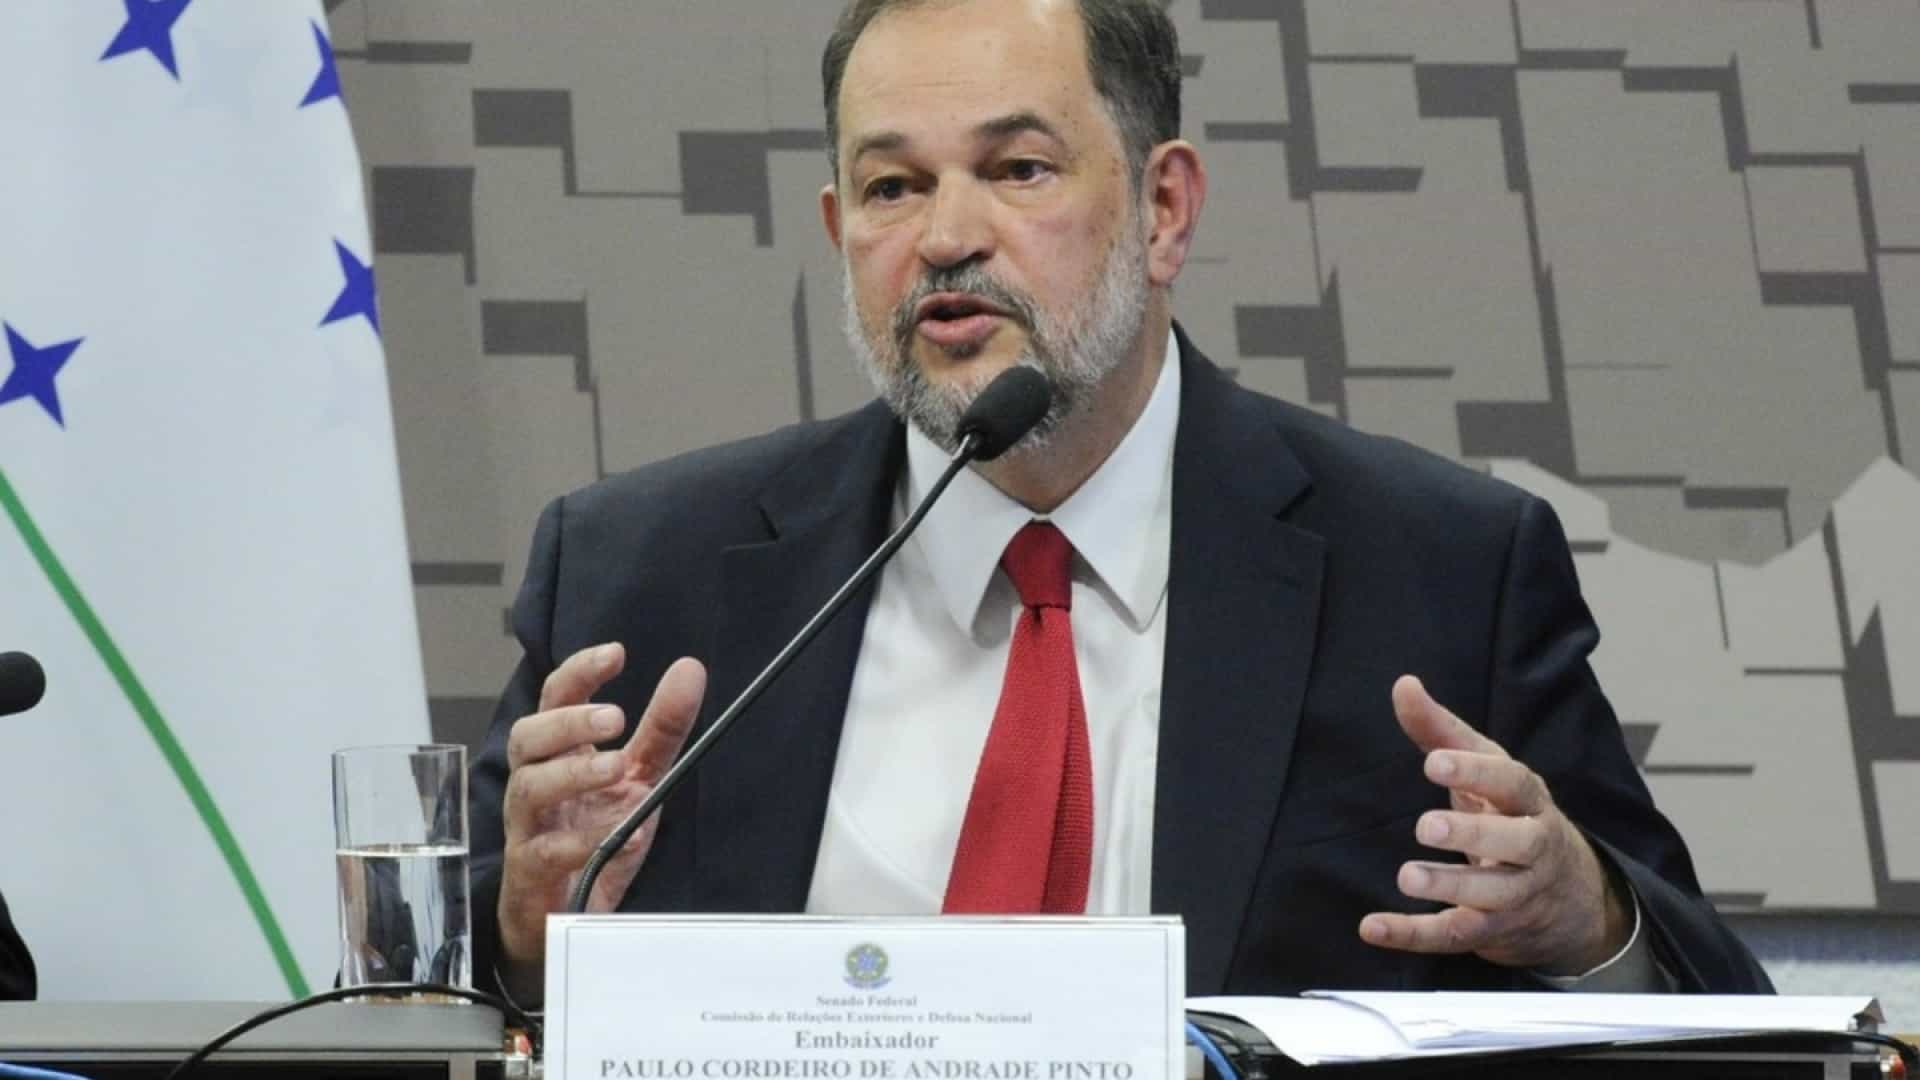 Paulo Cordeiro de Andrade Pinto